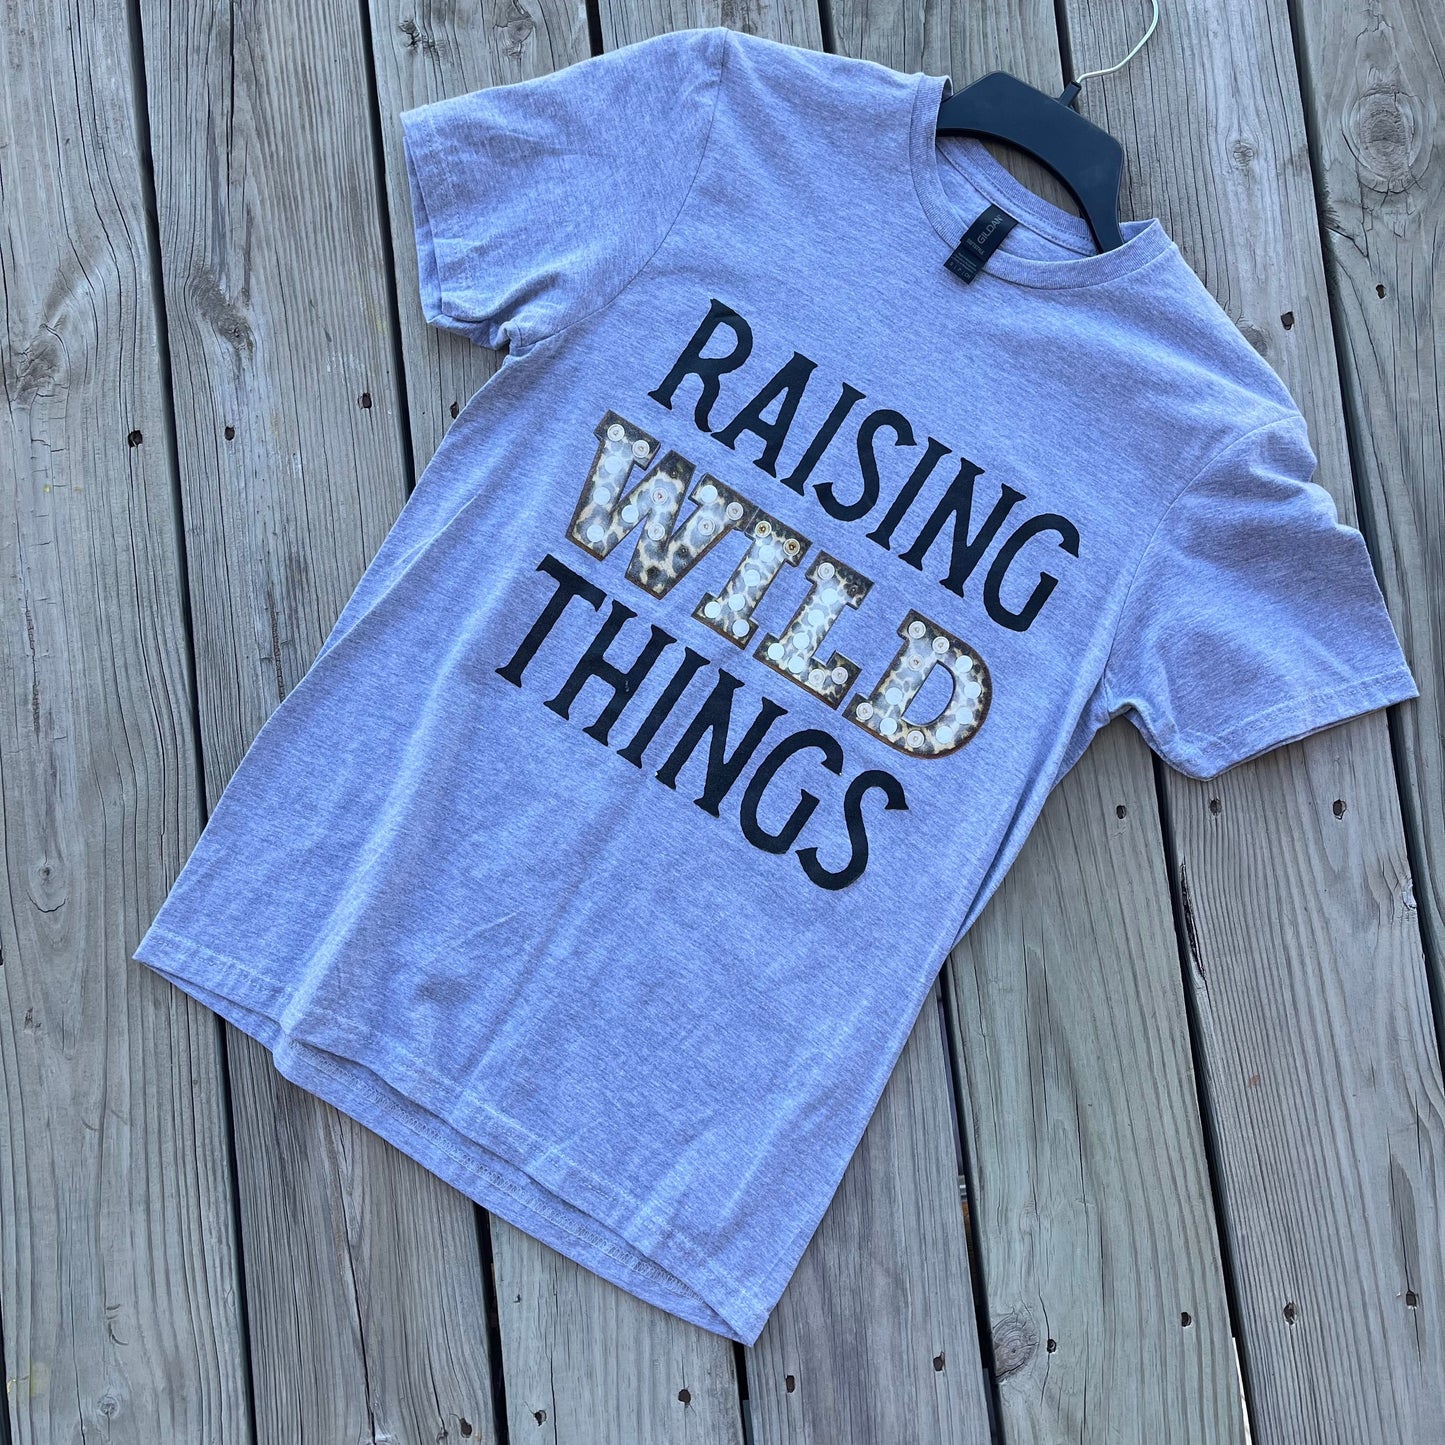 "Raising Wild Things" Graphic Tee